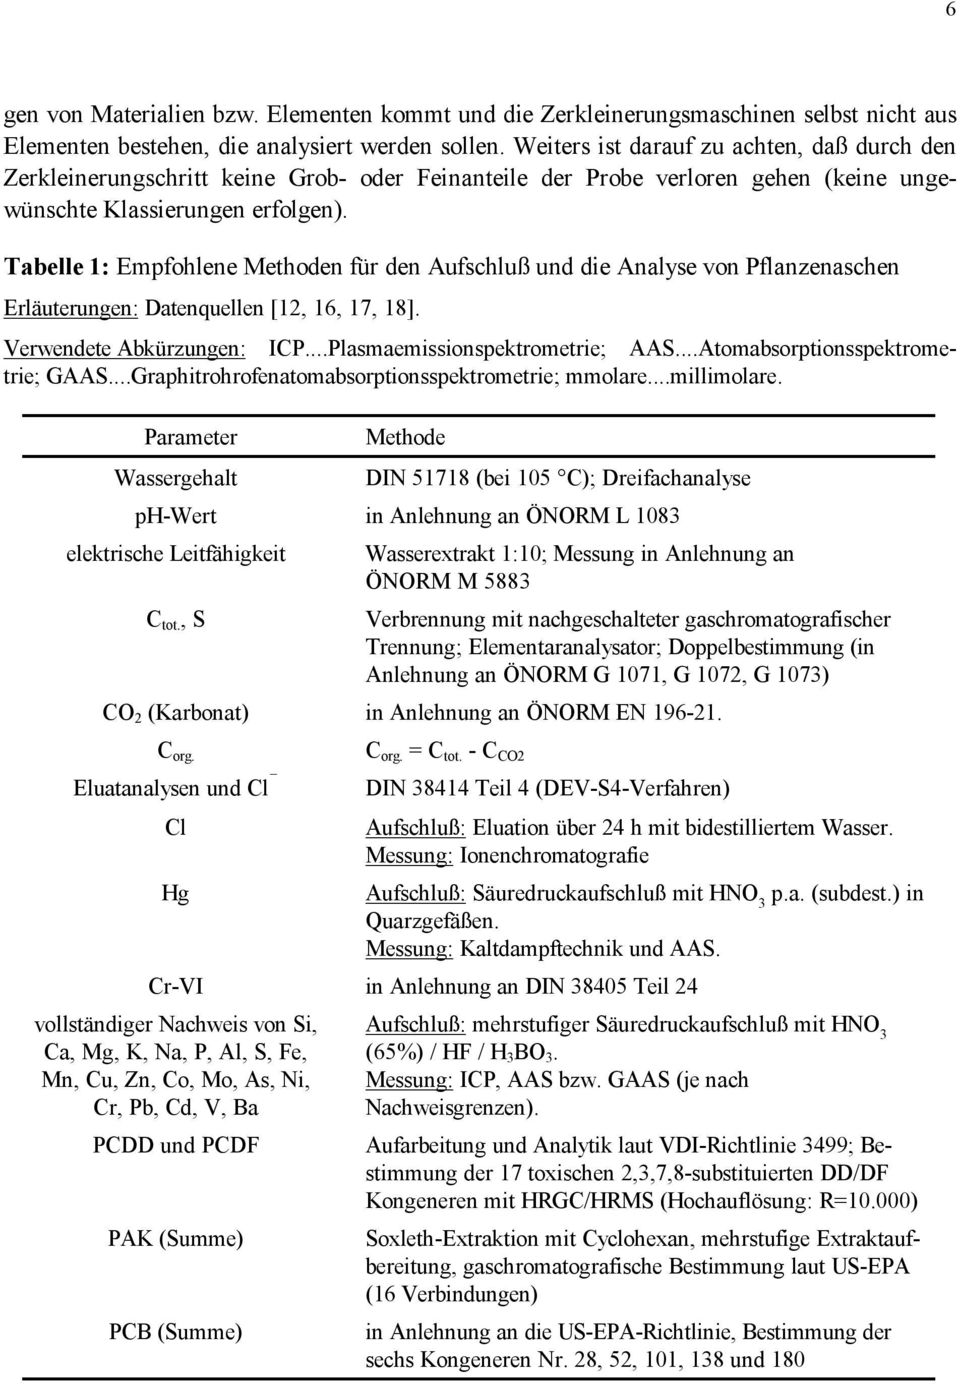 Tabelle 1: Empfohlene Methoden für den Aufschluß und die Analyse von Pflanzenaschen Erläuterungen: Datenquellen [12, 16, 17, 18]. Verwendete Abkürzungen: ICP...Plasmaemissionspektrometrie; AAS.